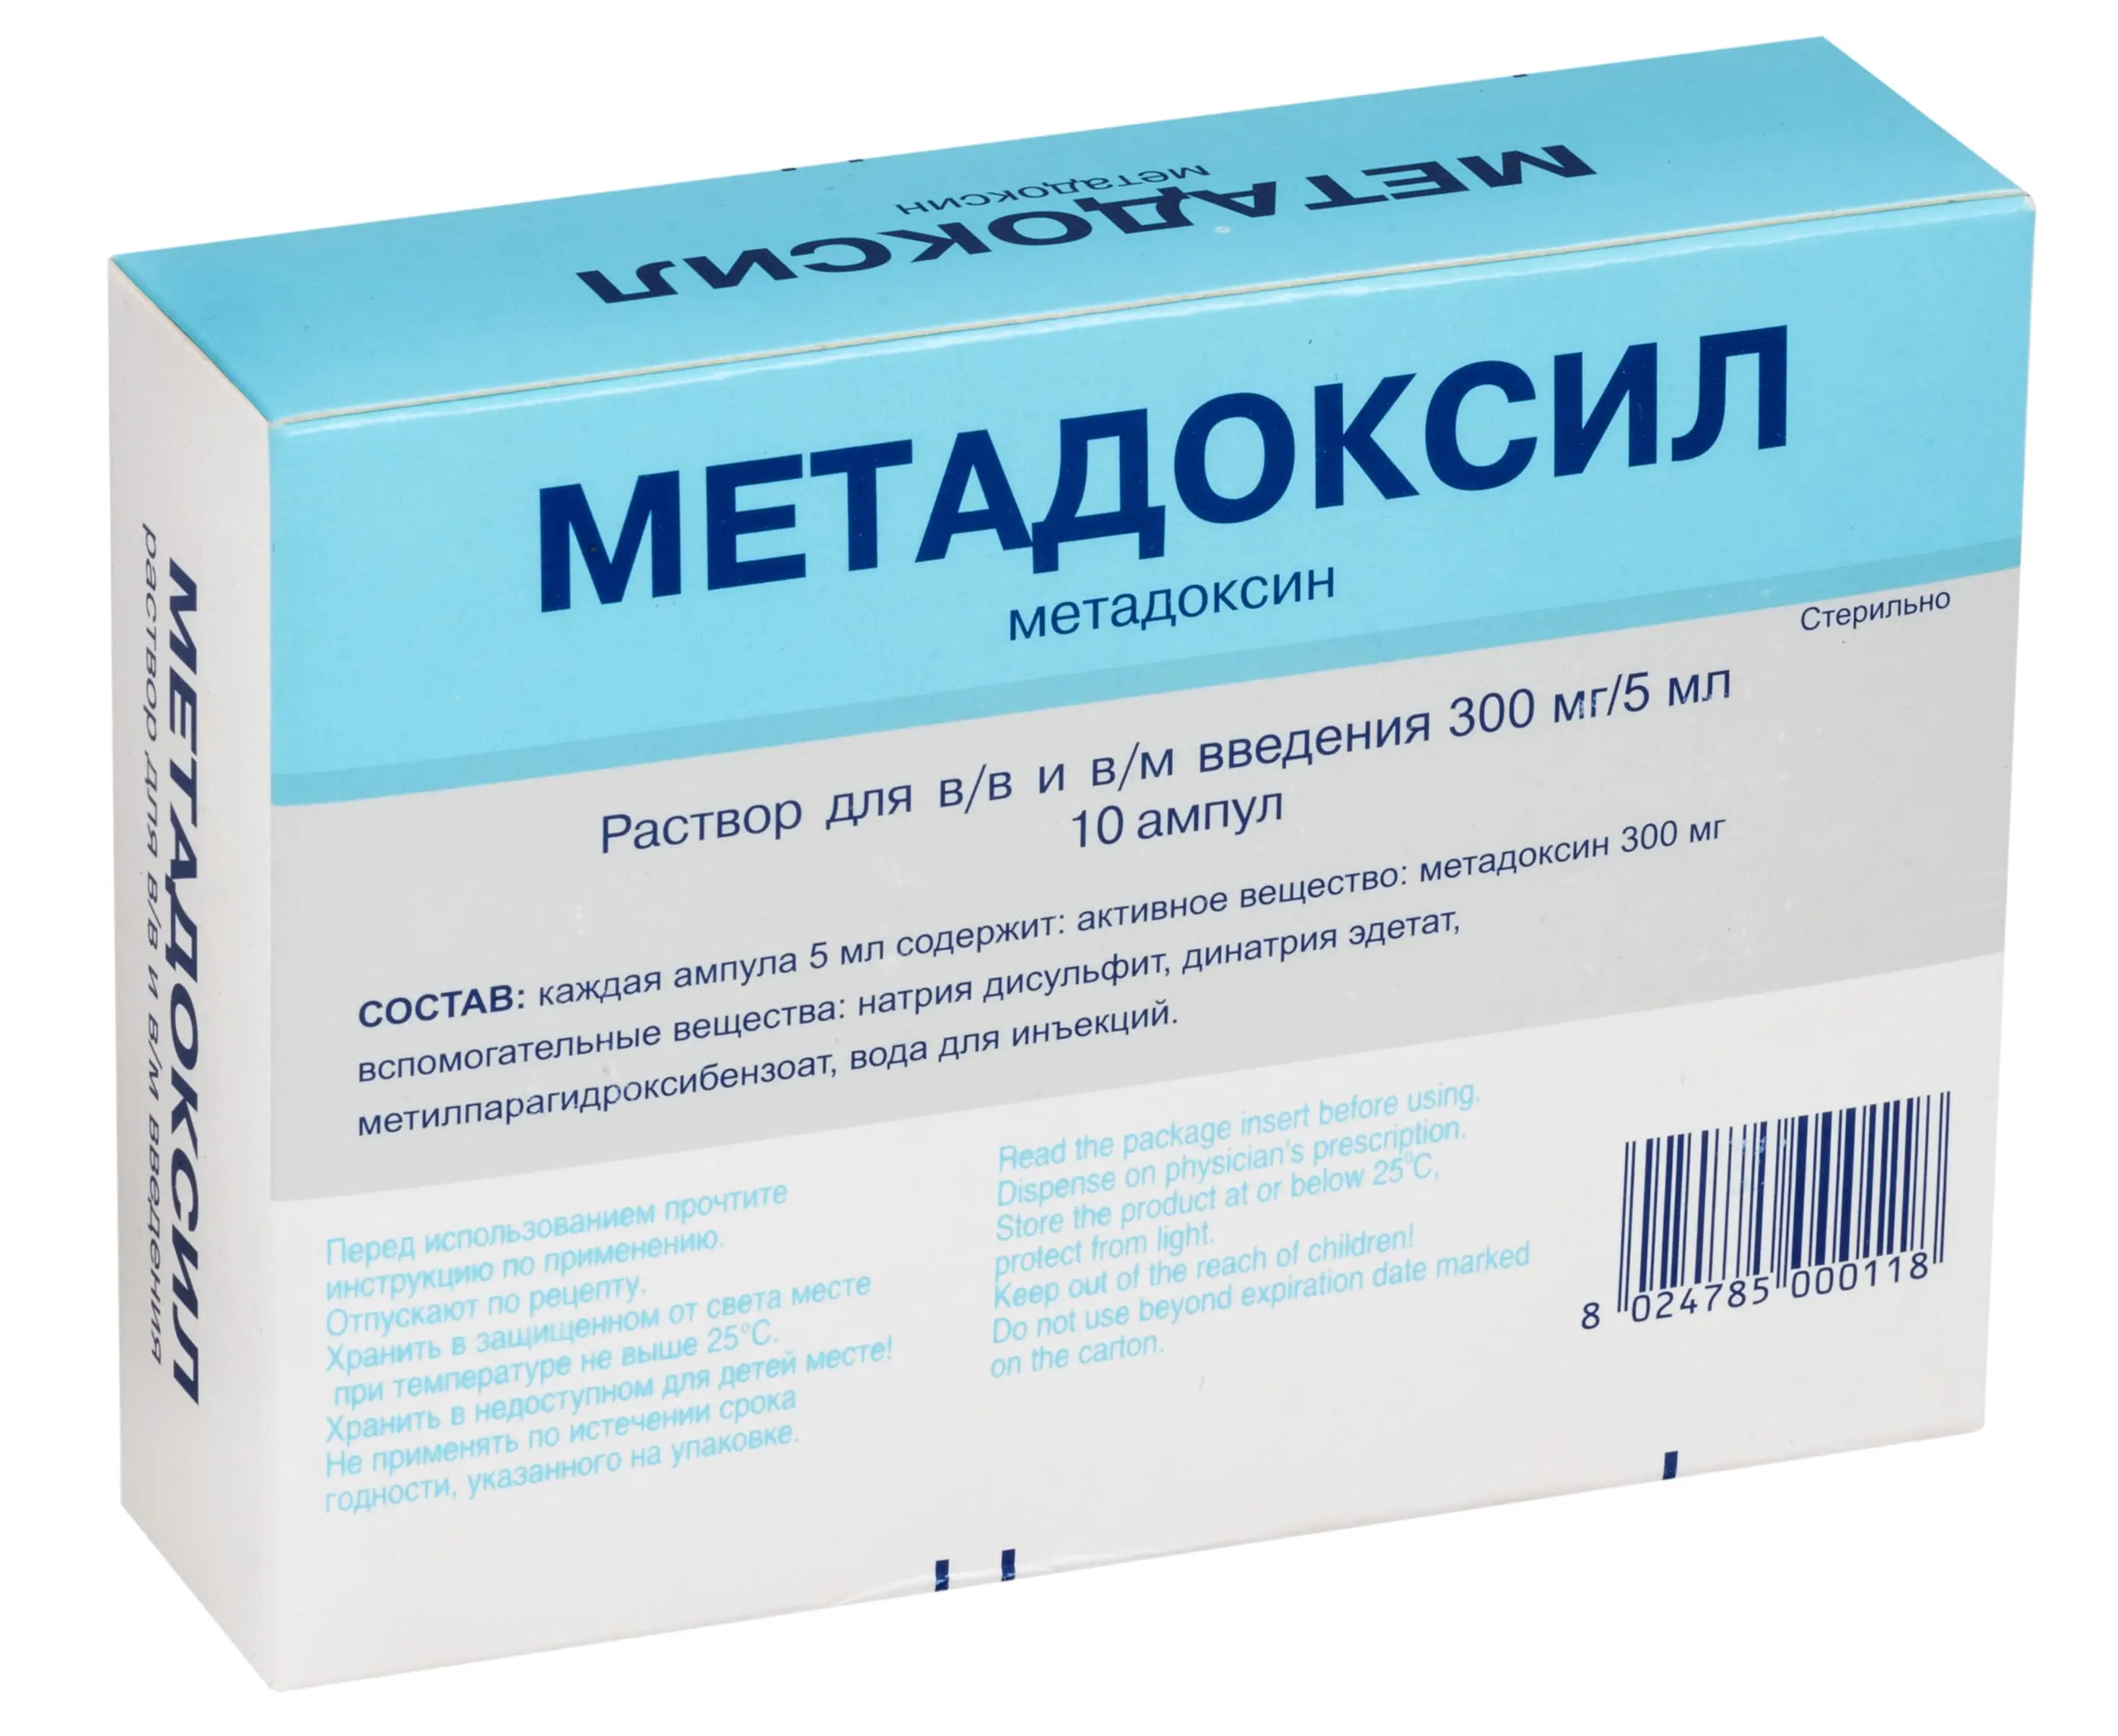 Препарат Метадоксил